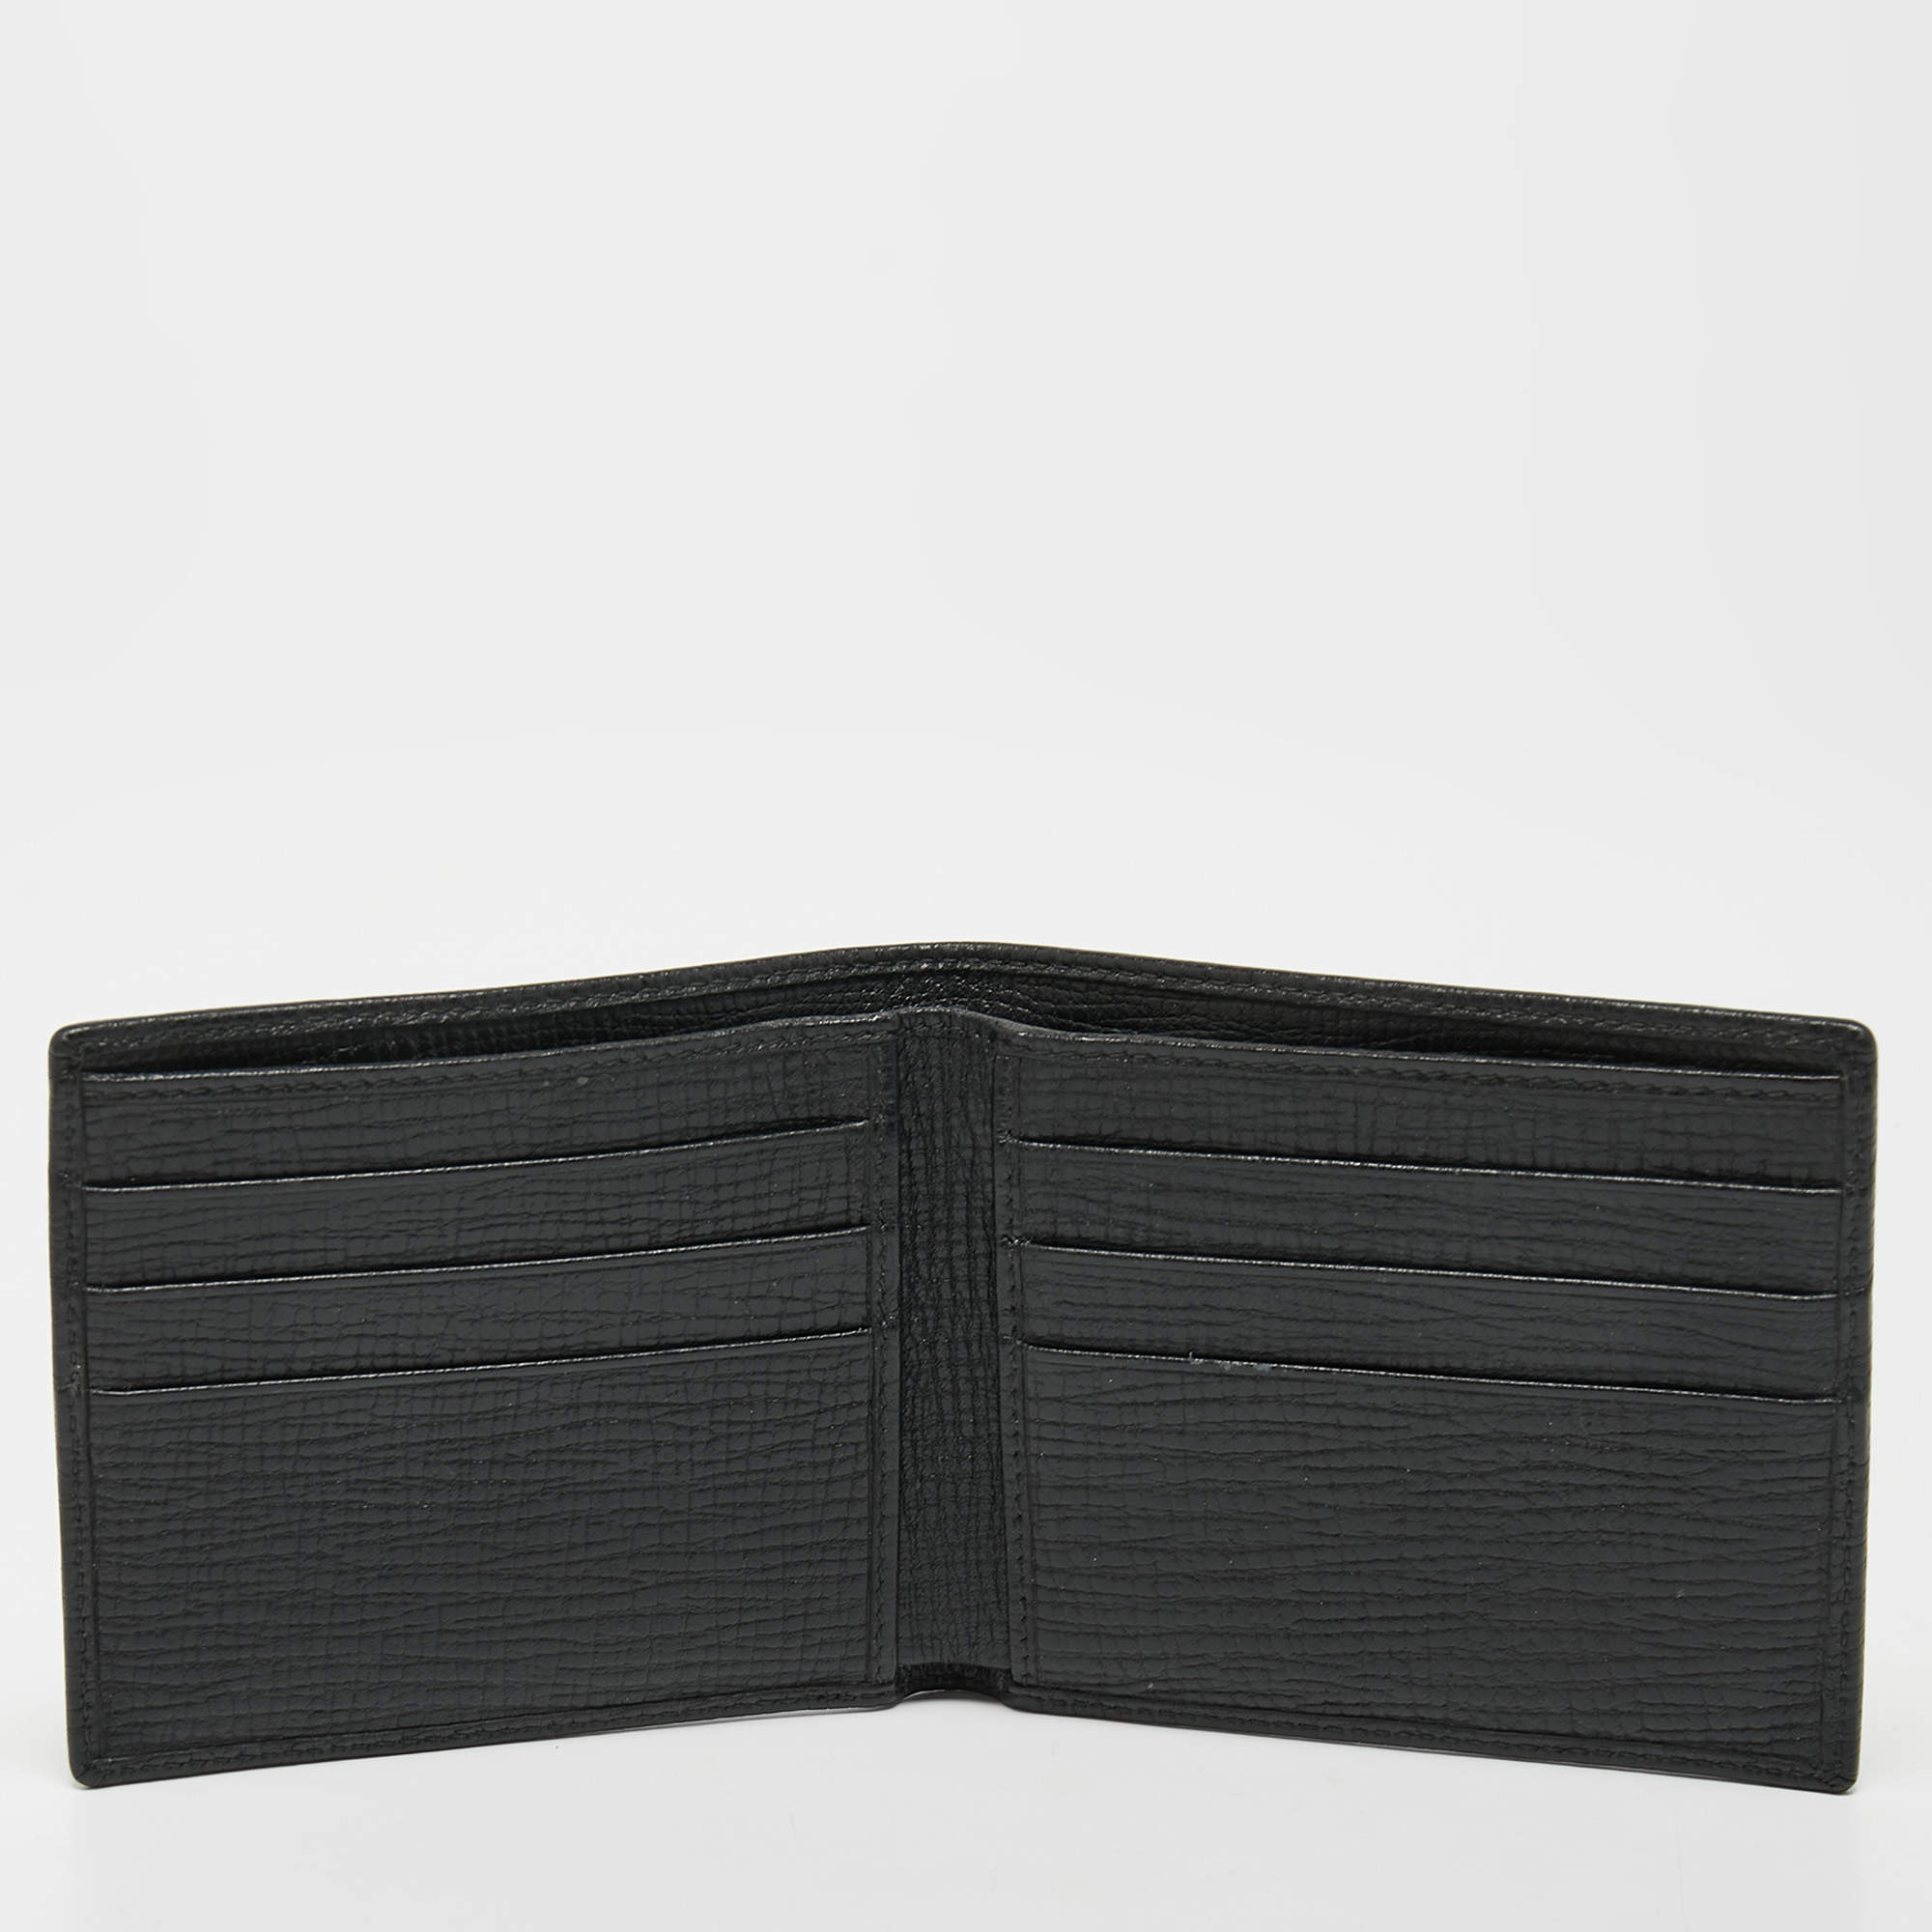 Dolce&Gabbana Wallets Men BP2522AW57680999 Leather Black 268€